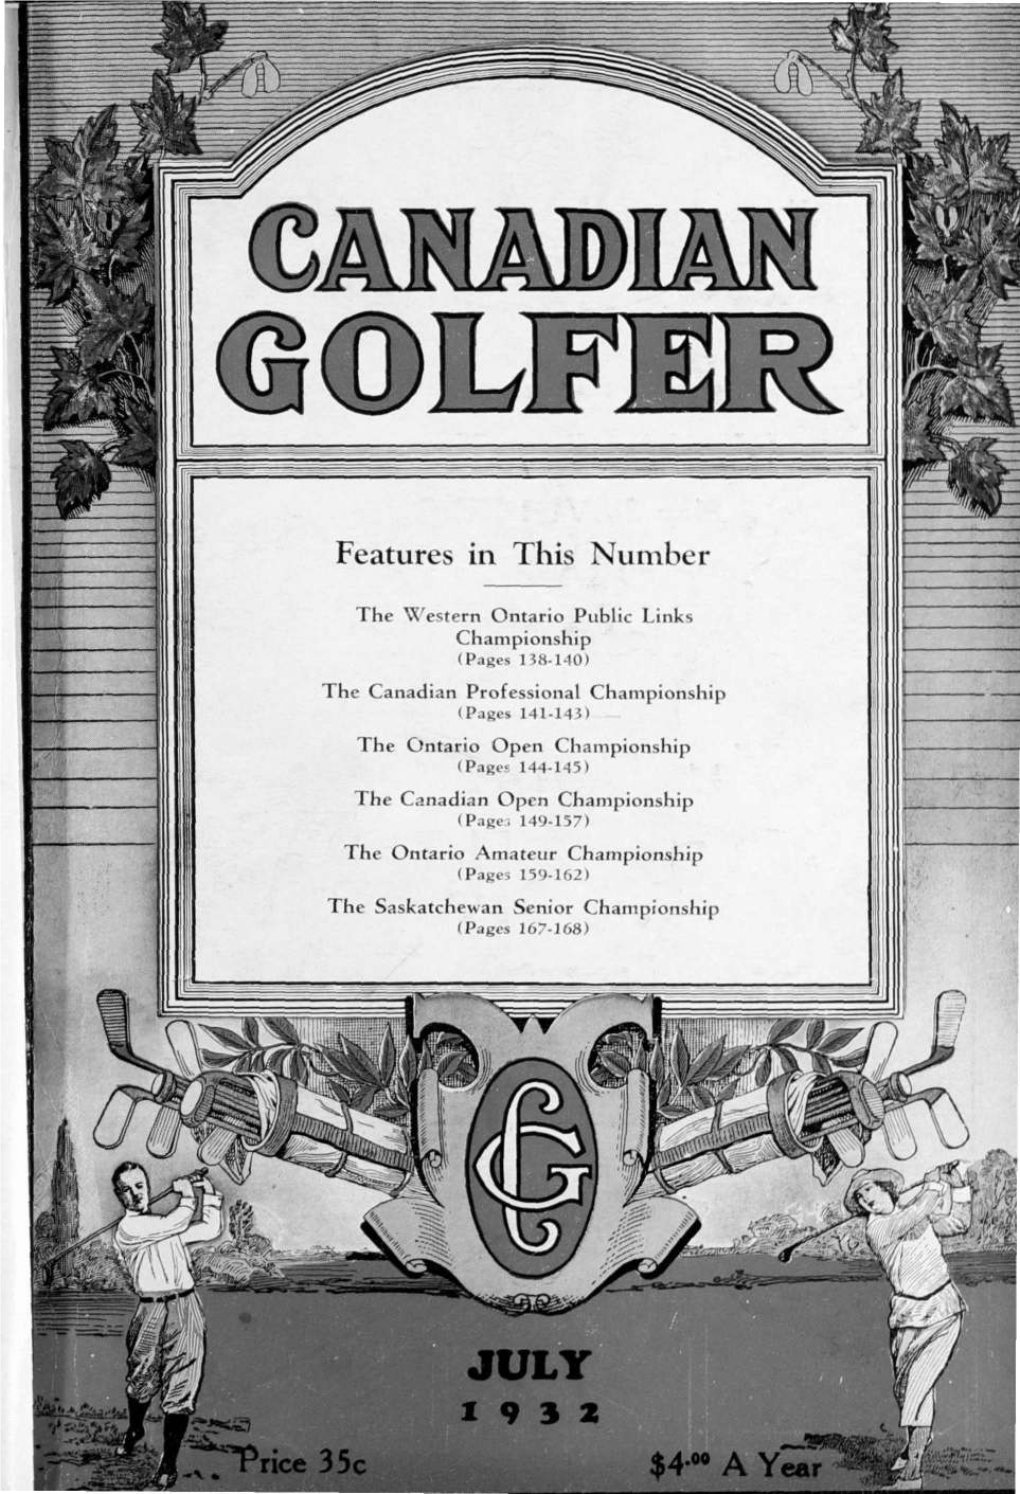 Canadian Golfer, July, 1932